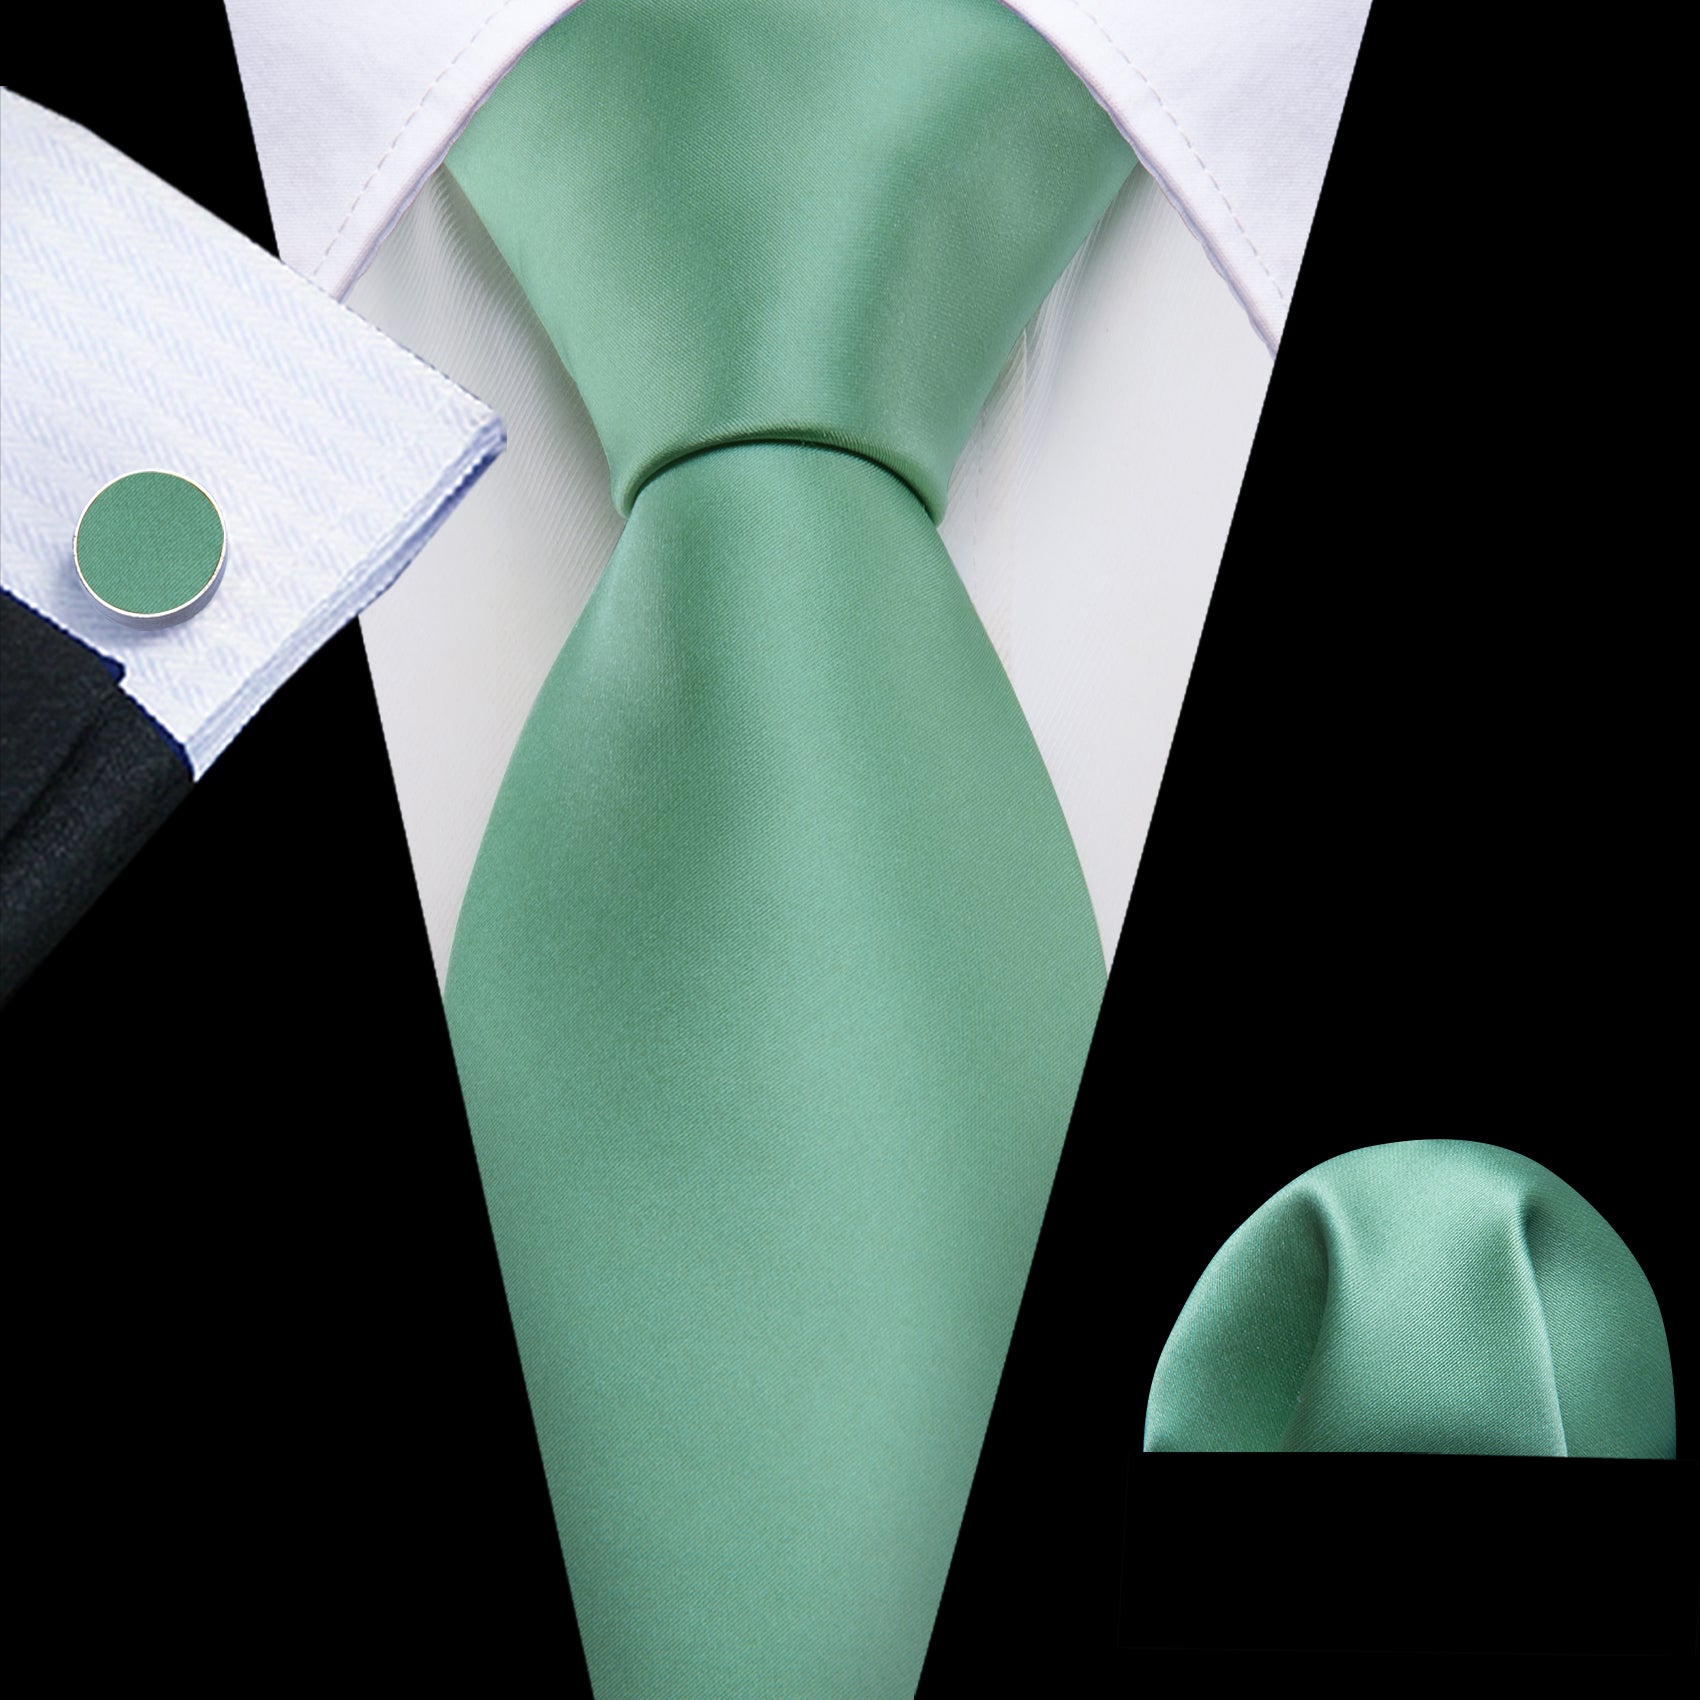 Barry Wang Men's Tie Turquoise Green Solid Silk Tie Handkerchief Cufflinks Set